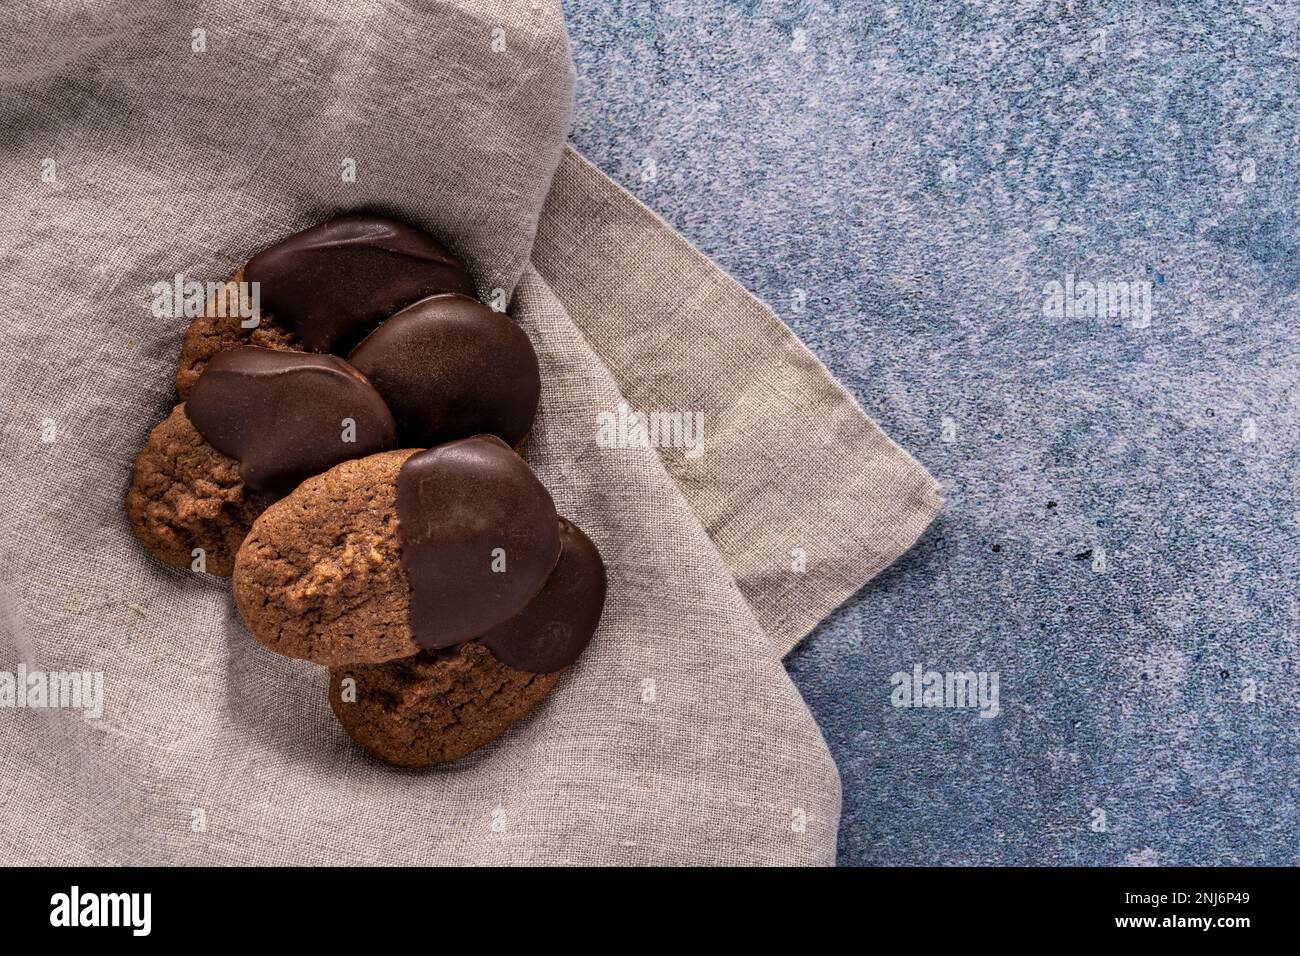 biscotti spritz al cioccolato immersi nel cioccolato che si stendano su un tovagliolo di lino seduto su uno sfondo blu chiazzato Foto Stock